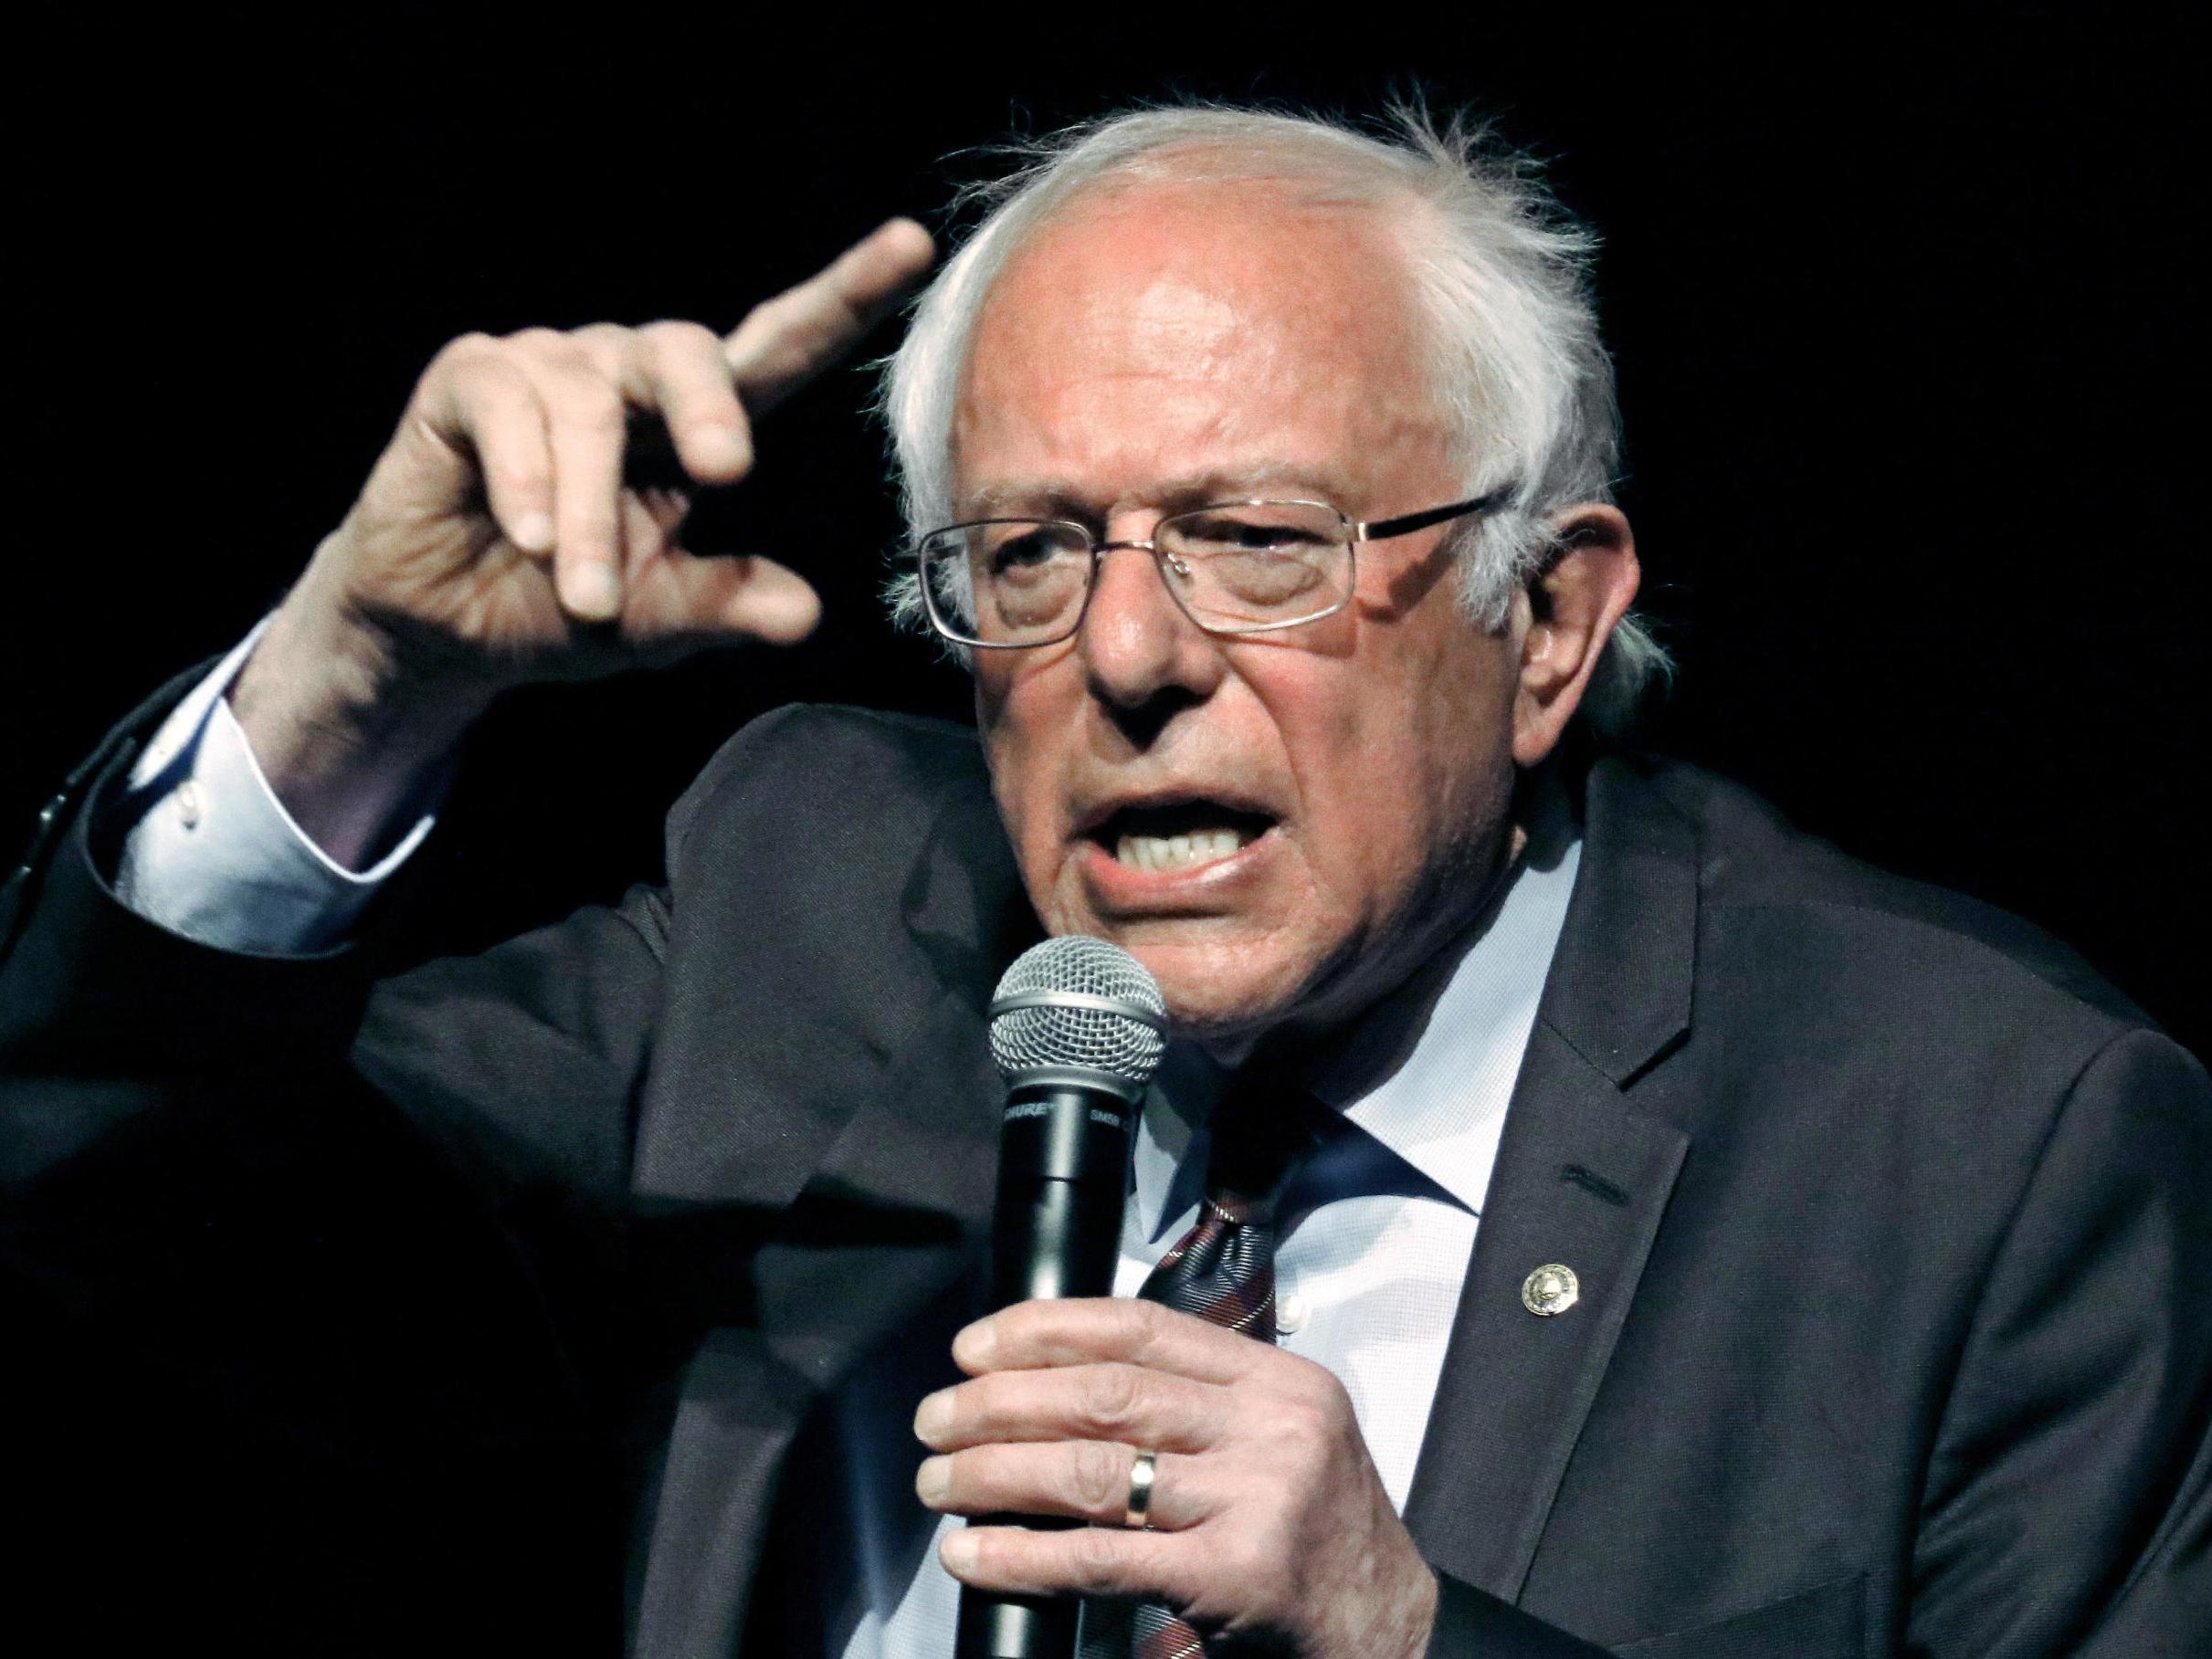 Nacido en 1941, Bernie Sanders es uno de los miembros jóvenes de la generación silenciosa